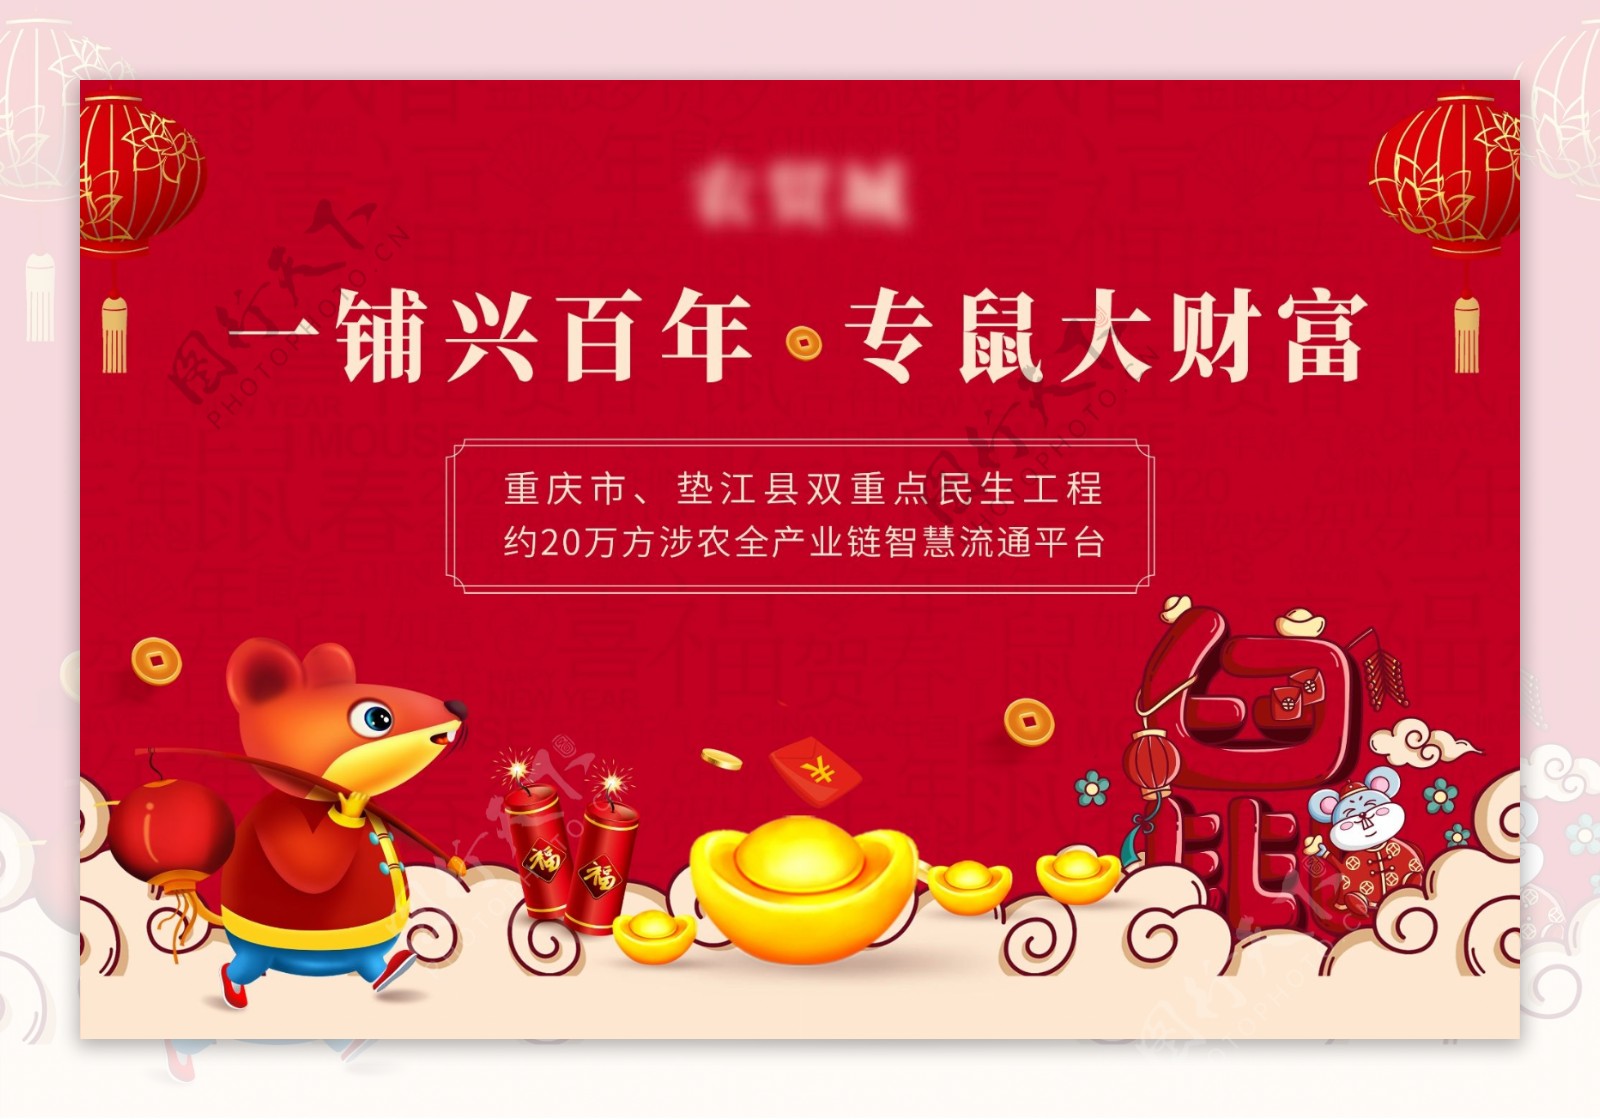 春节海报鼠年画面